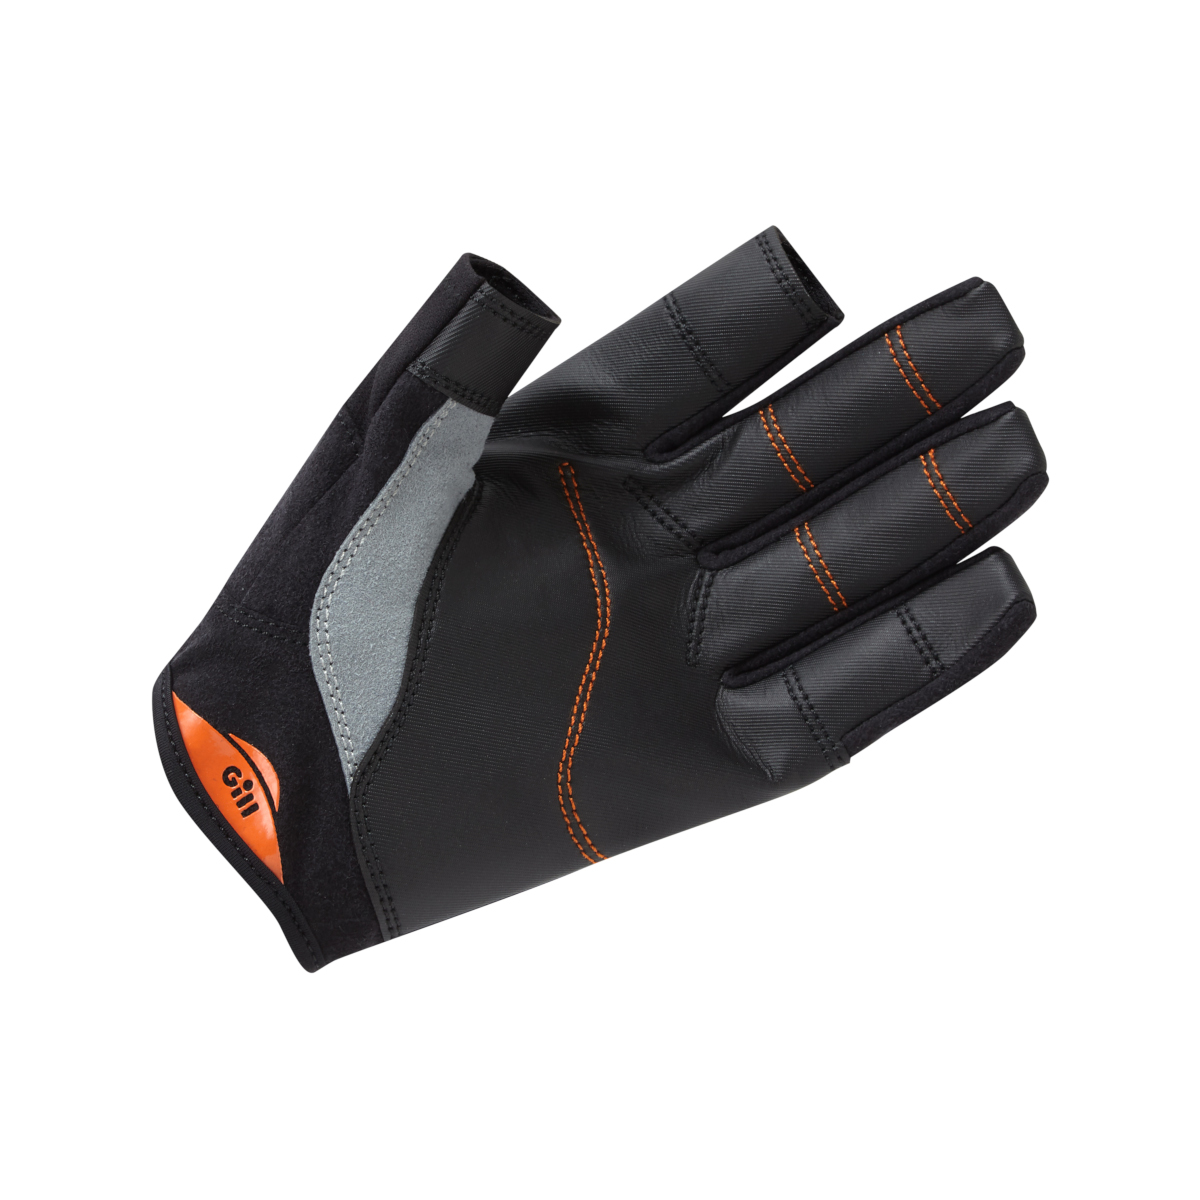 Gill Championship gants de voile à doigts longs - noir, taille XL